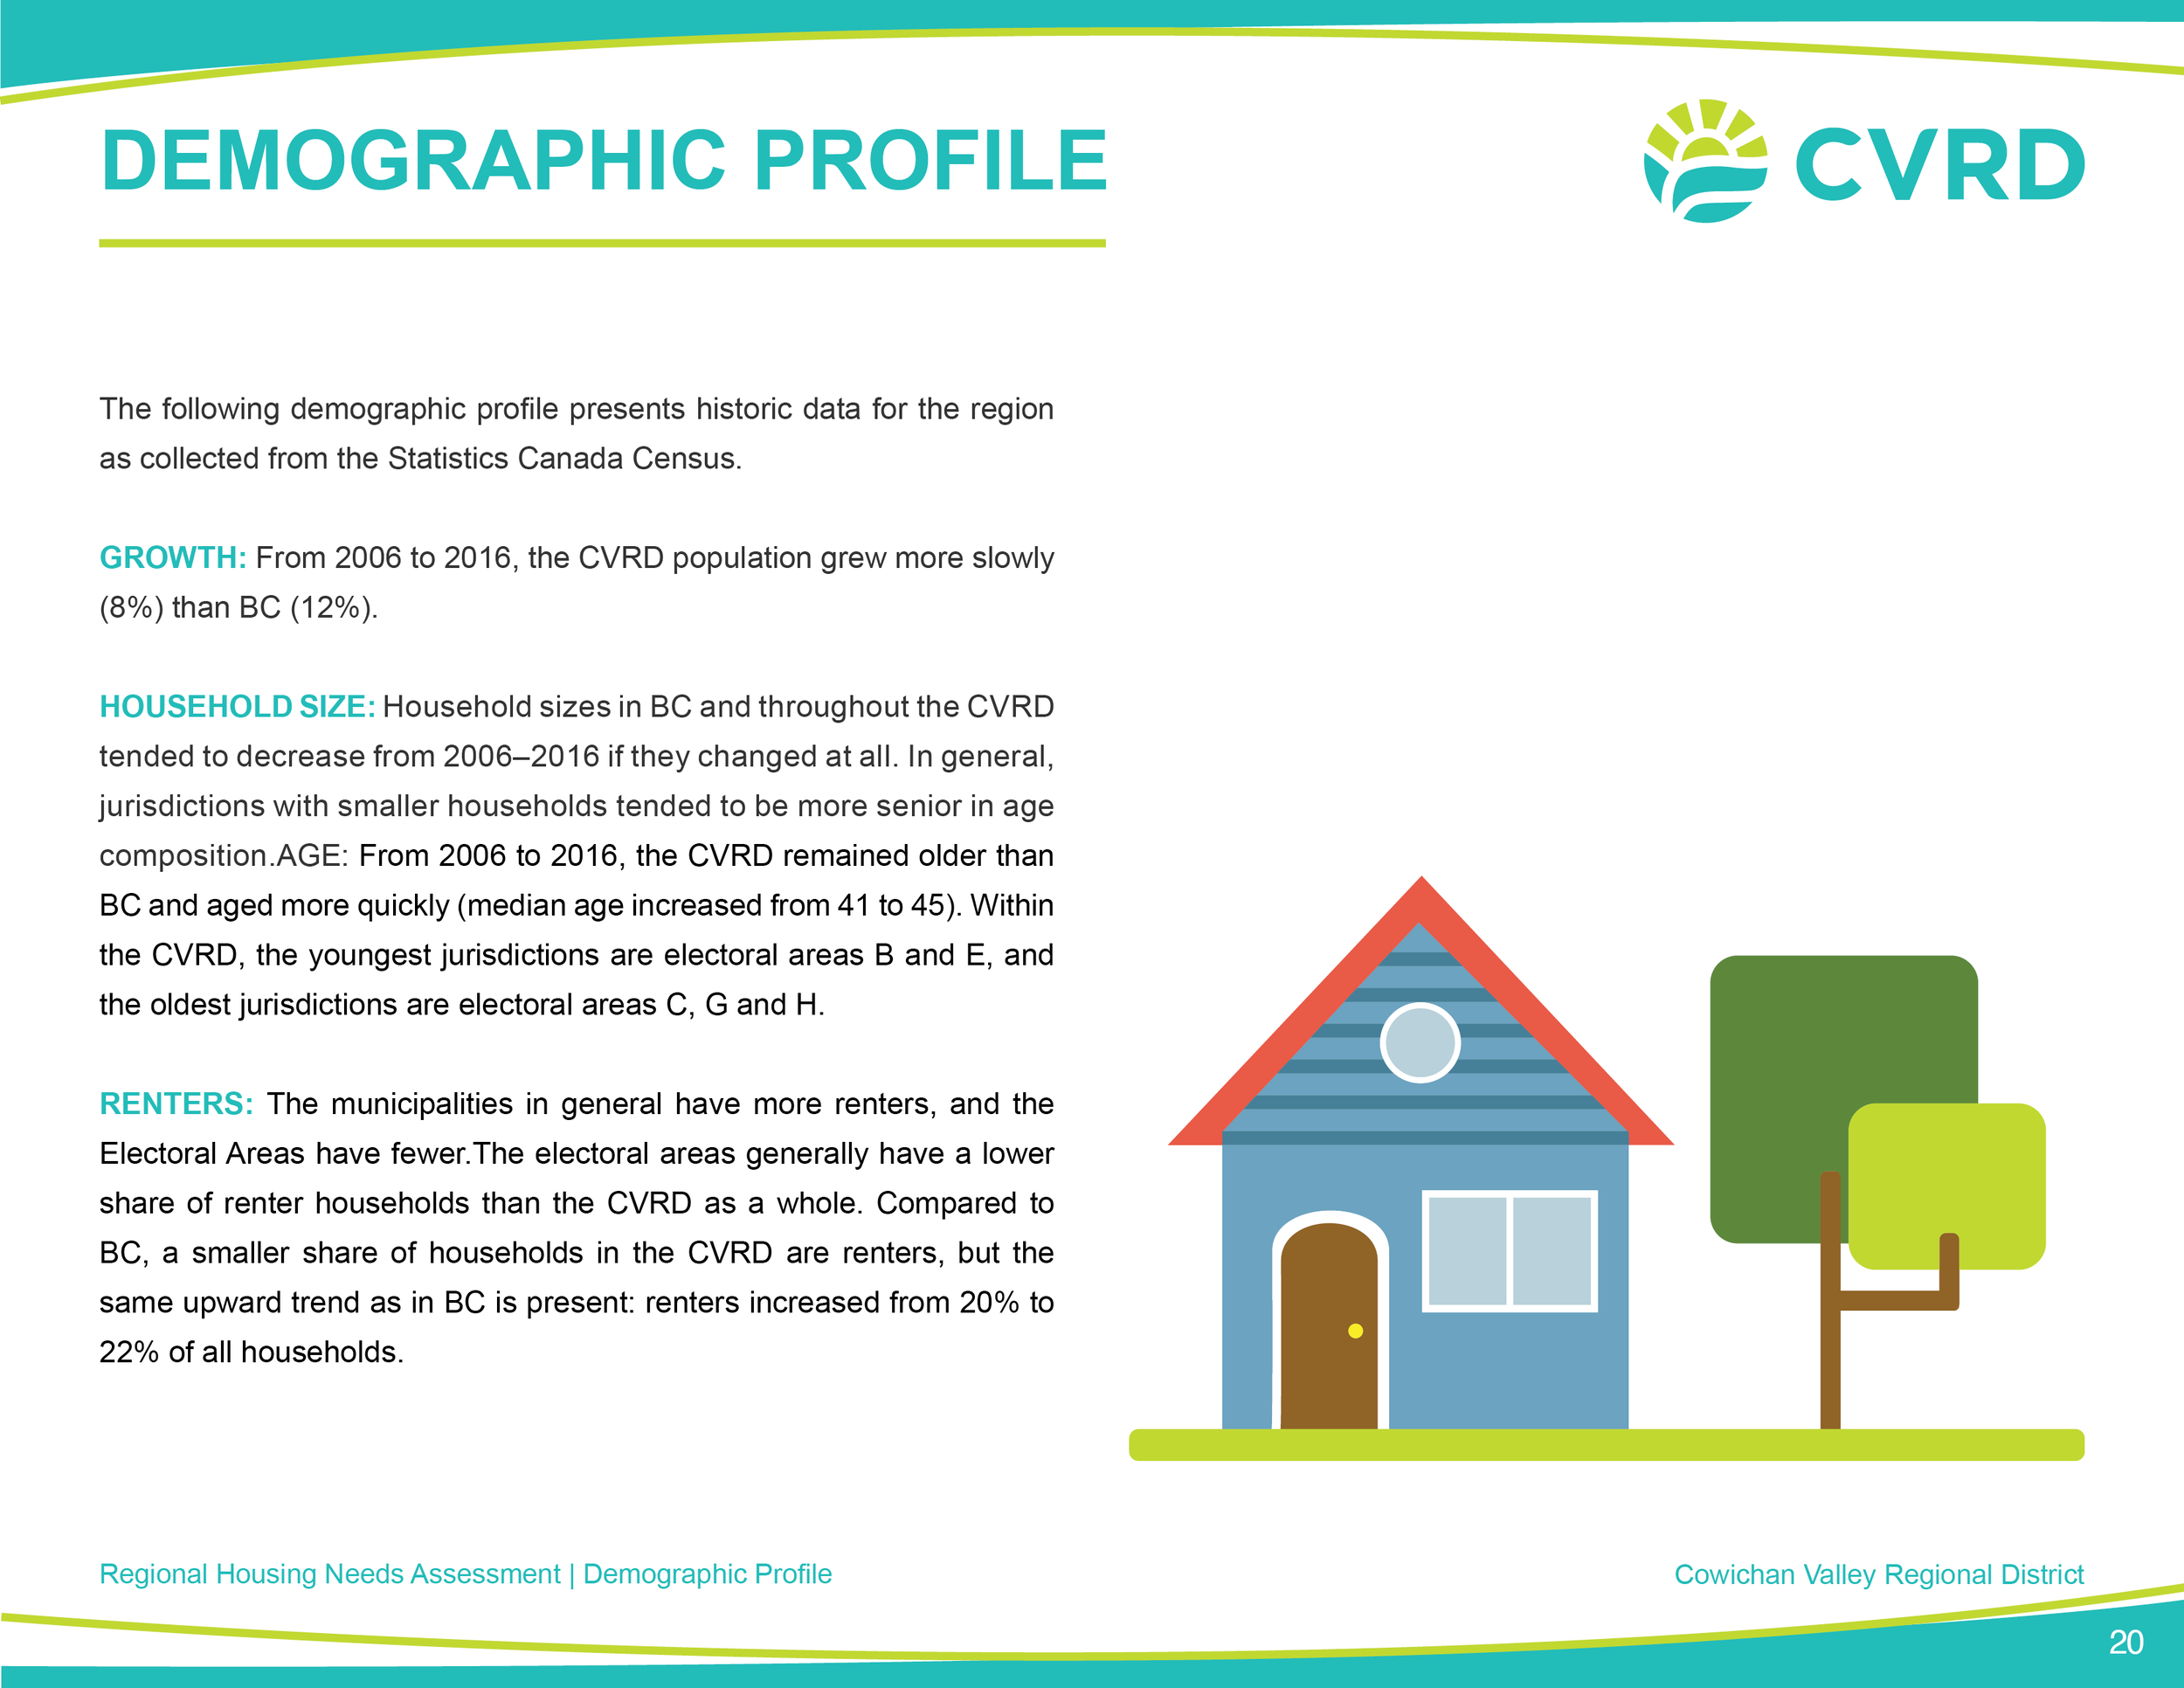 CVRD_Regional Report_V620.png